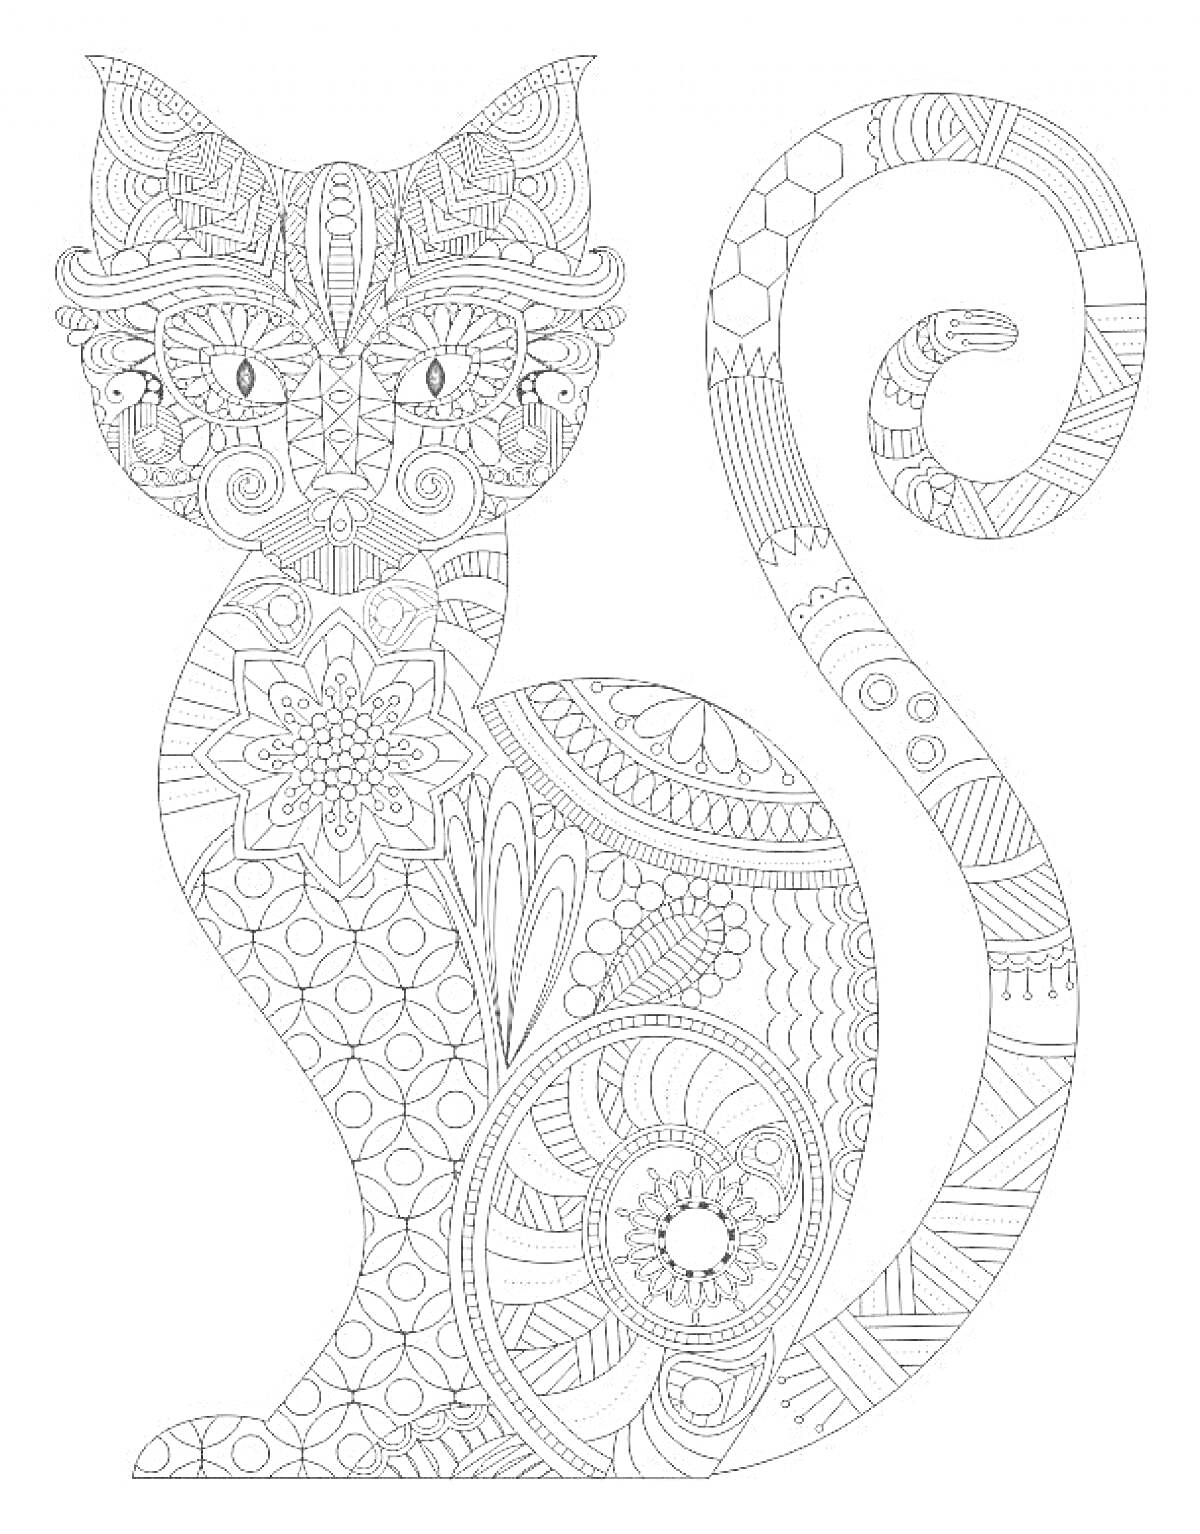 Раскраска Антистресс раскраска кошка с узорами: цветы, геометрические фигуры, волнистые линии, завитки